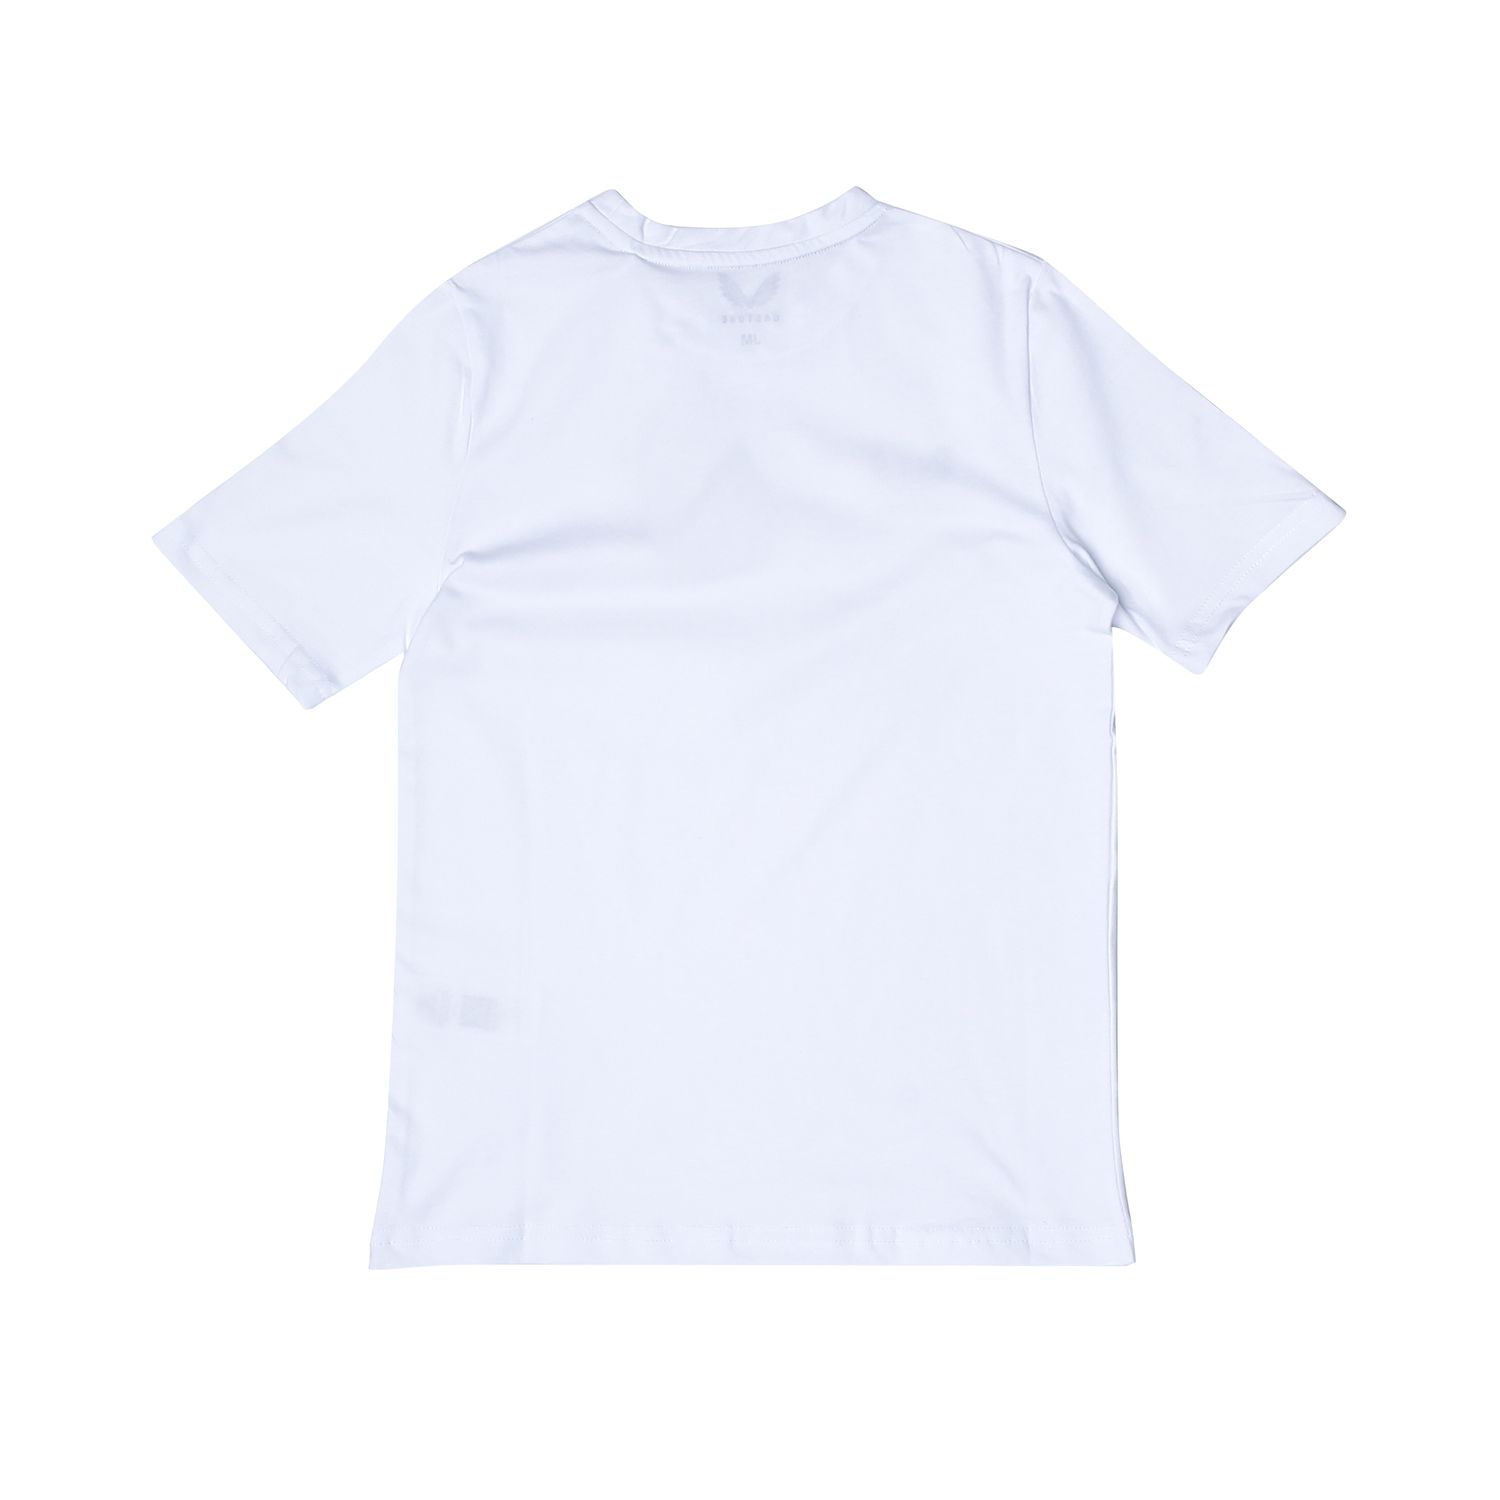 White Castore Junior Cotton Leisure T-Shirt - Get The Label